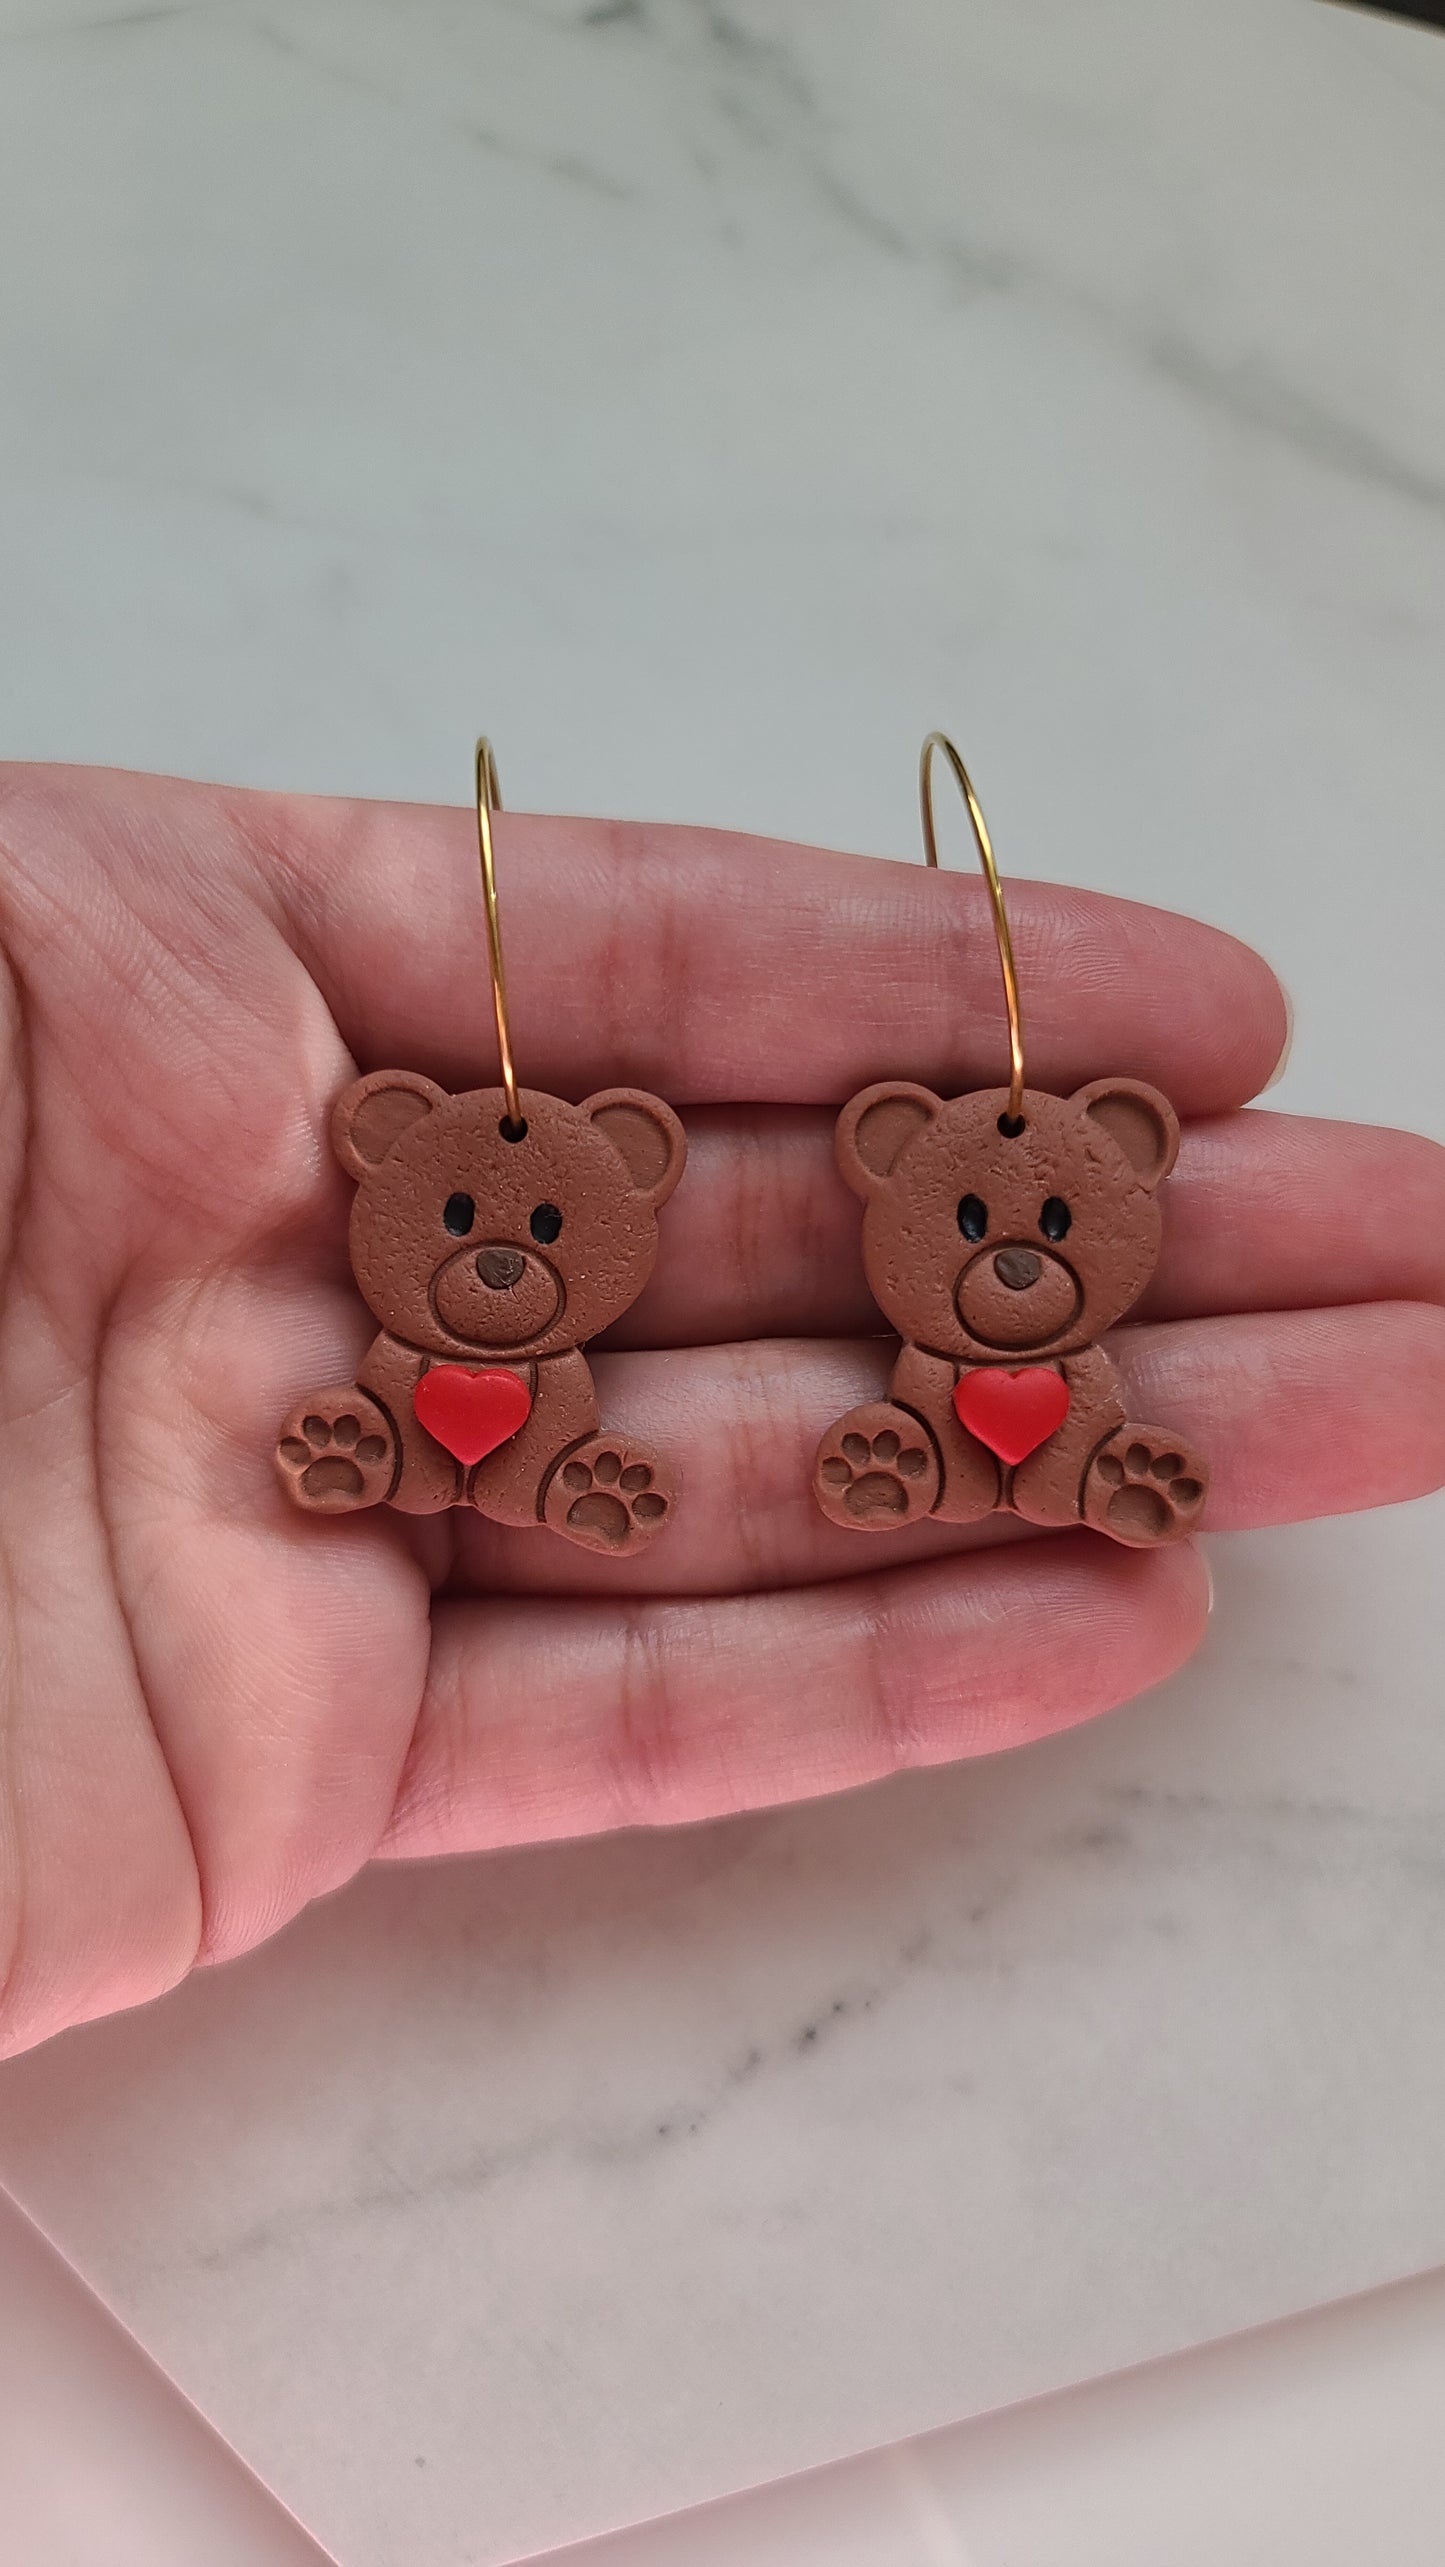 Teddy bear with heart earrings